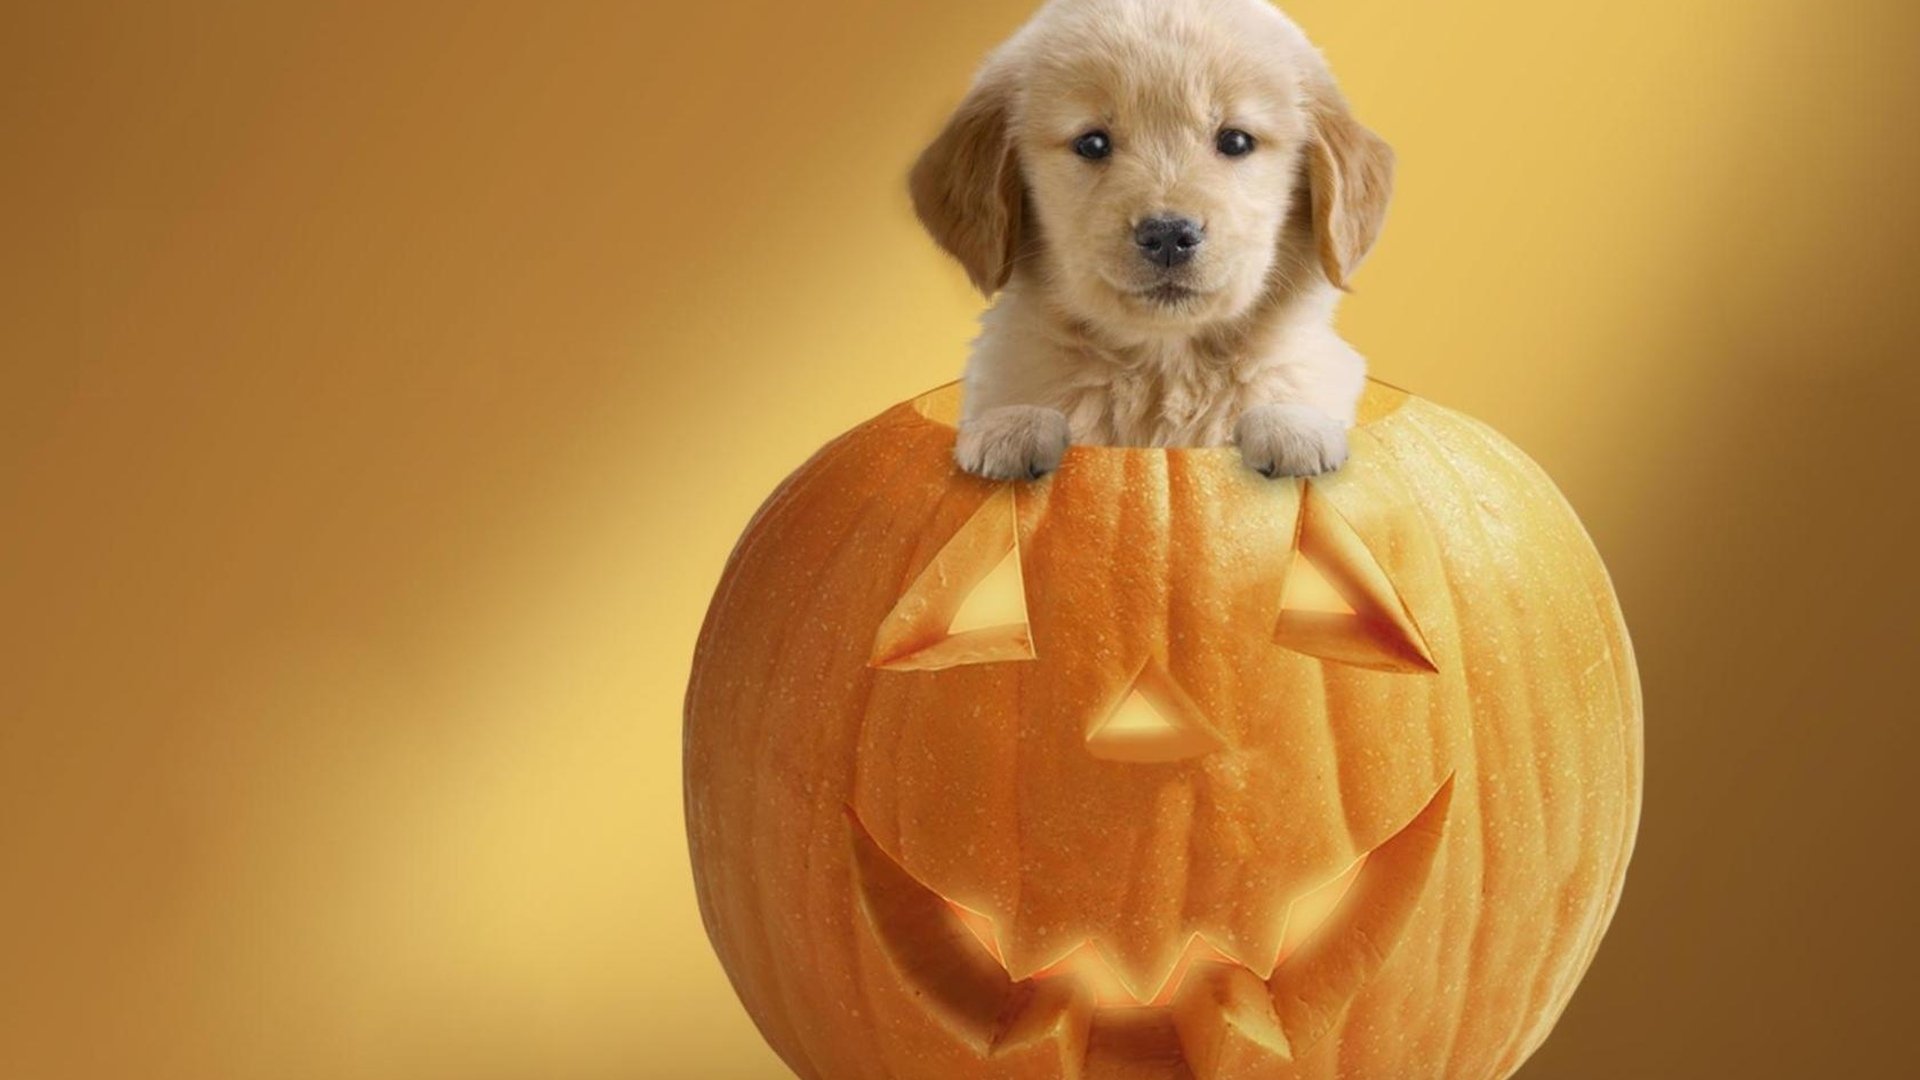 Cute Dog Pumpkin Wallpaper for Halloween